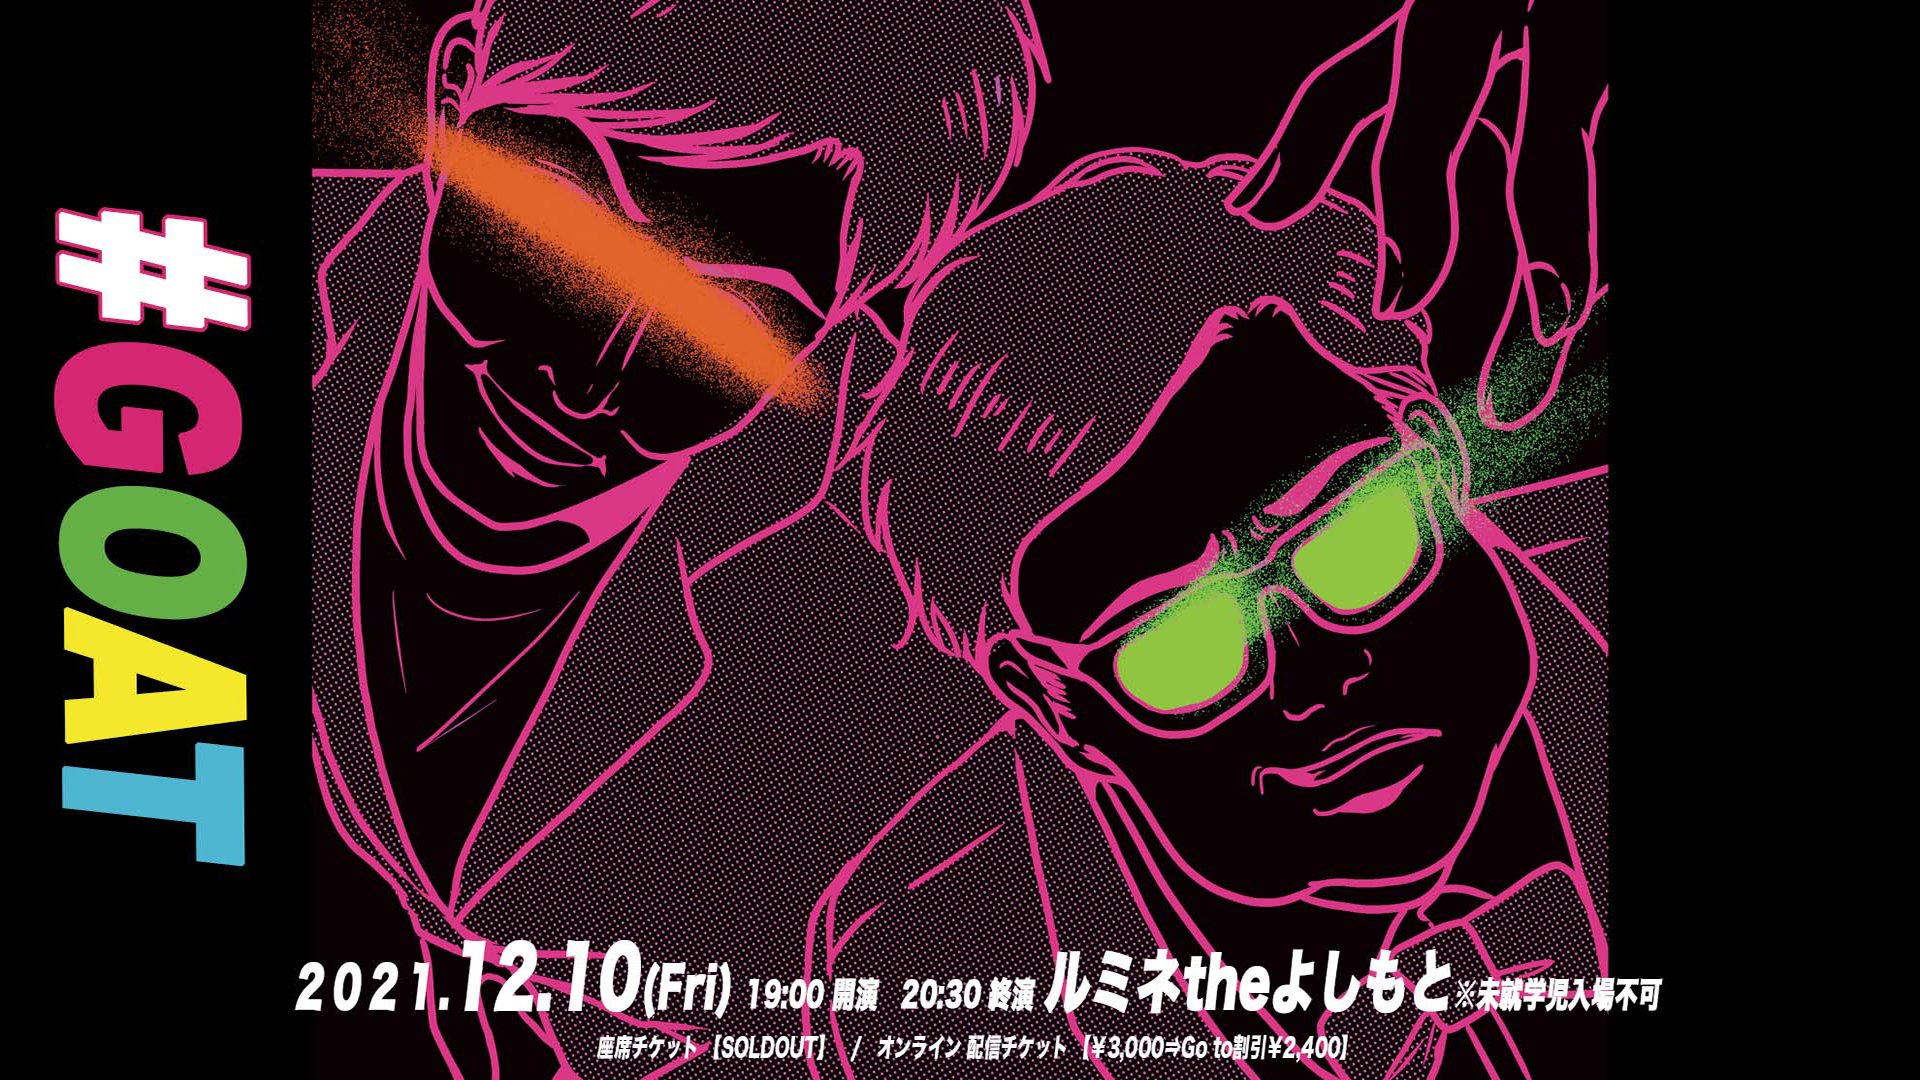 「とろサーモン 20th Anniversary Live 『G.O.A.T』」大好評につき公演前に見逃し配信延長が決定!